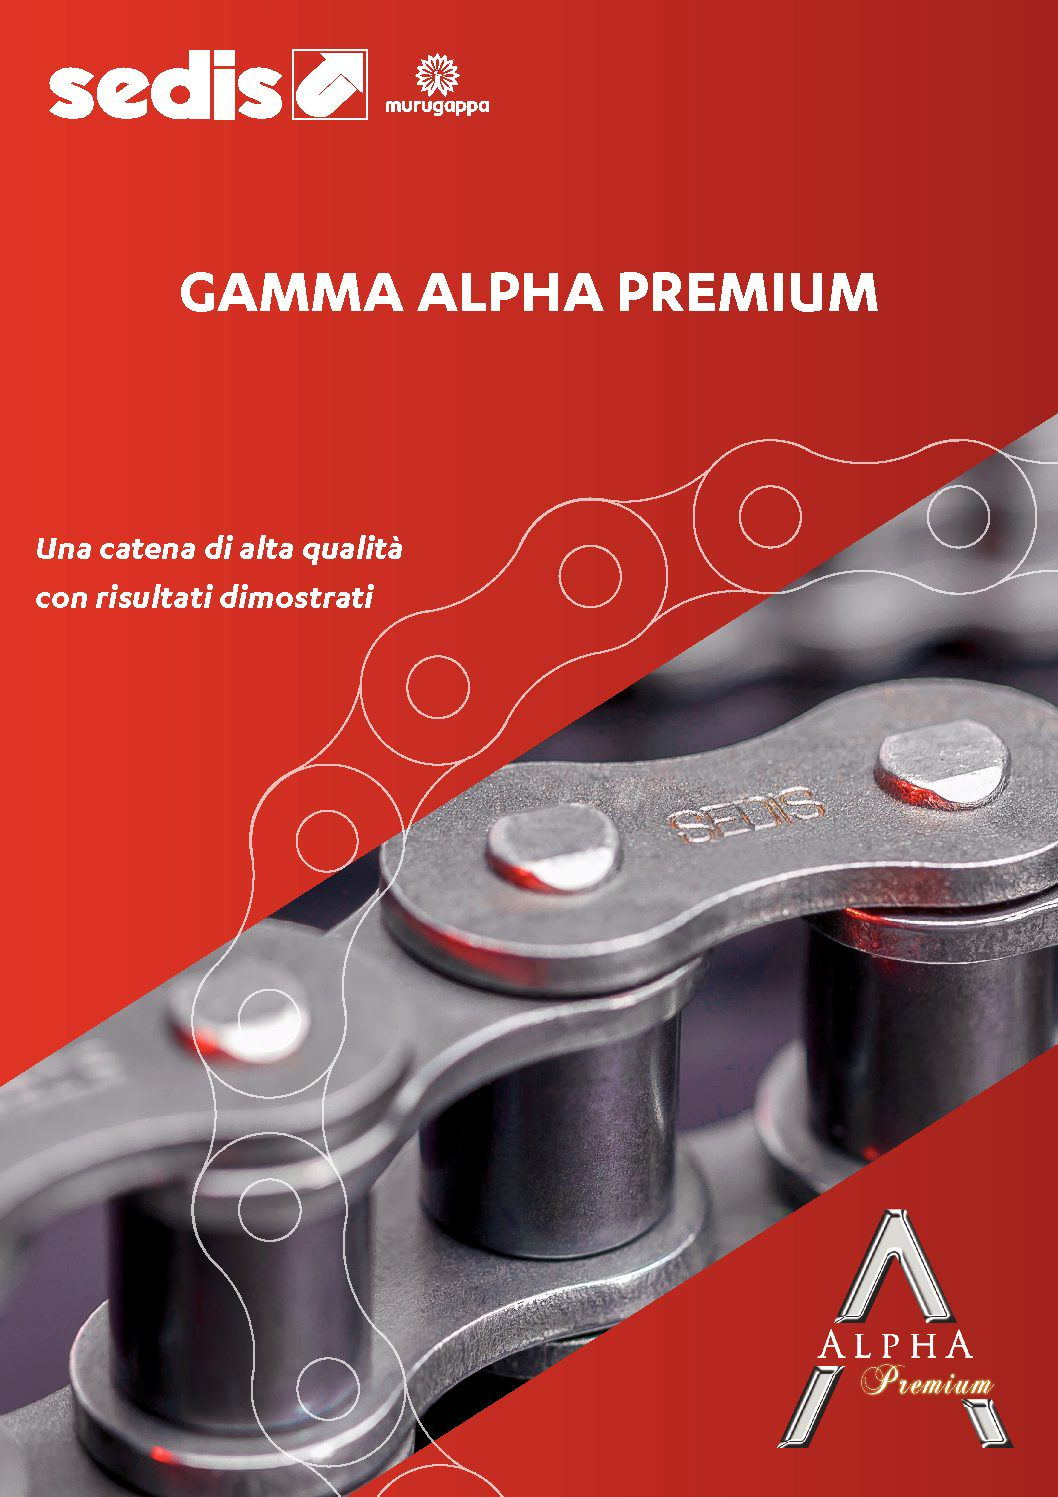 sedis-gamma-alpha-premium